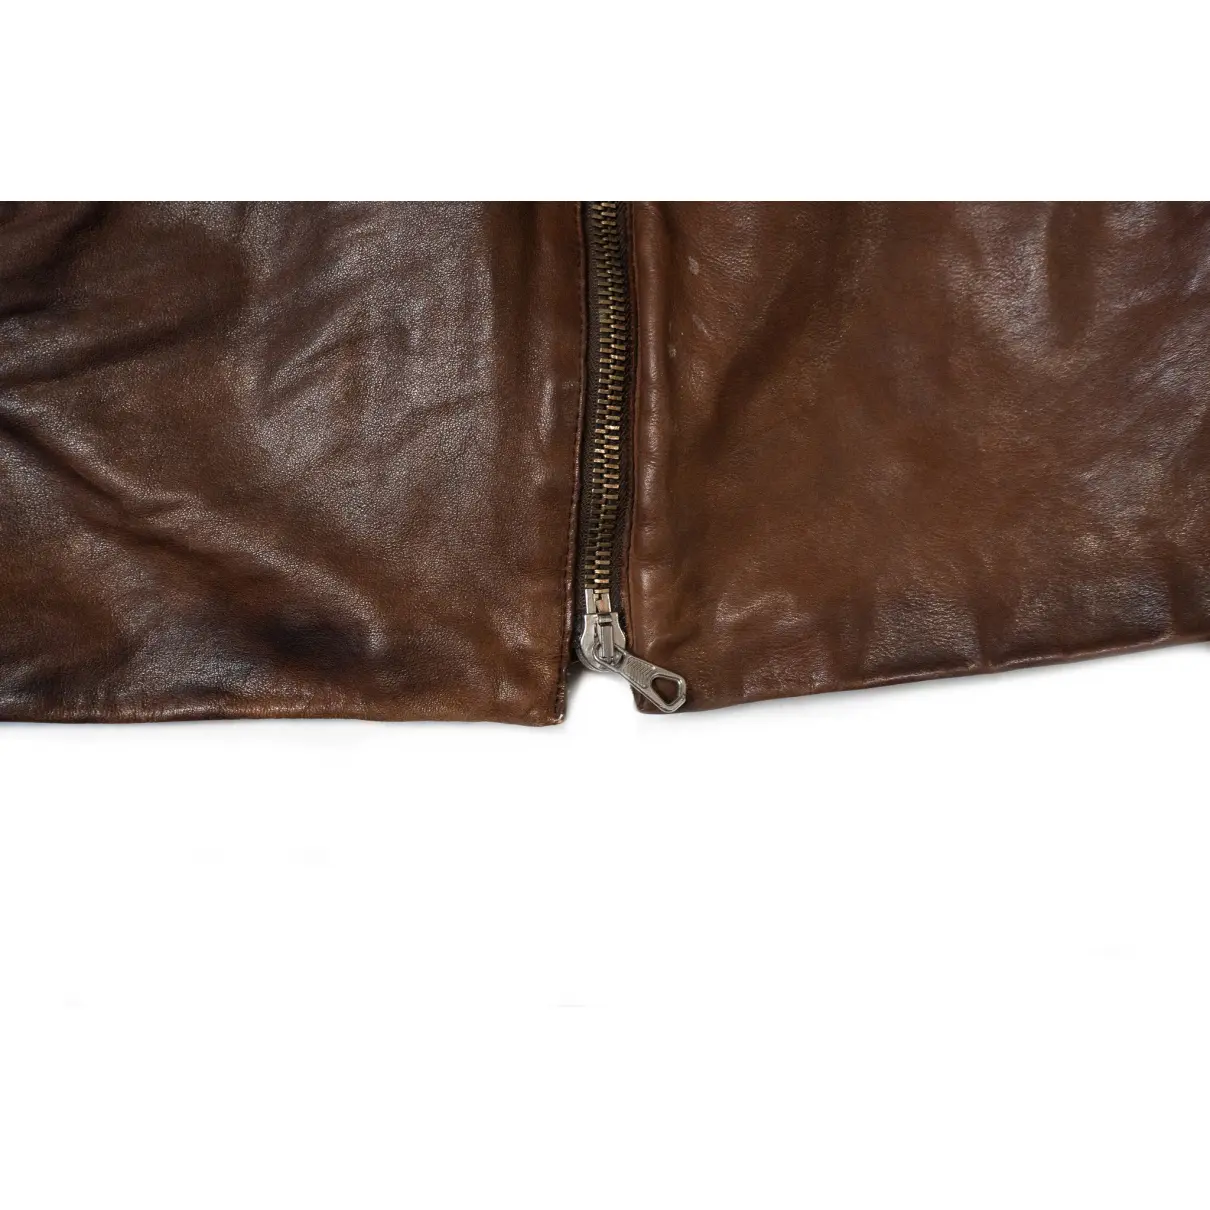 Leather coat Maison Martin Margiela - Vintage